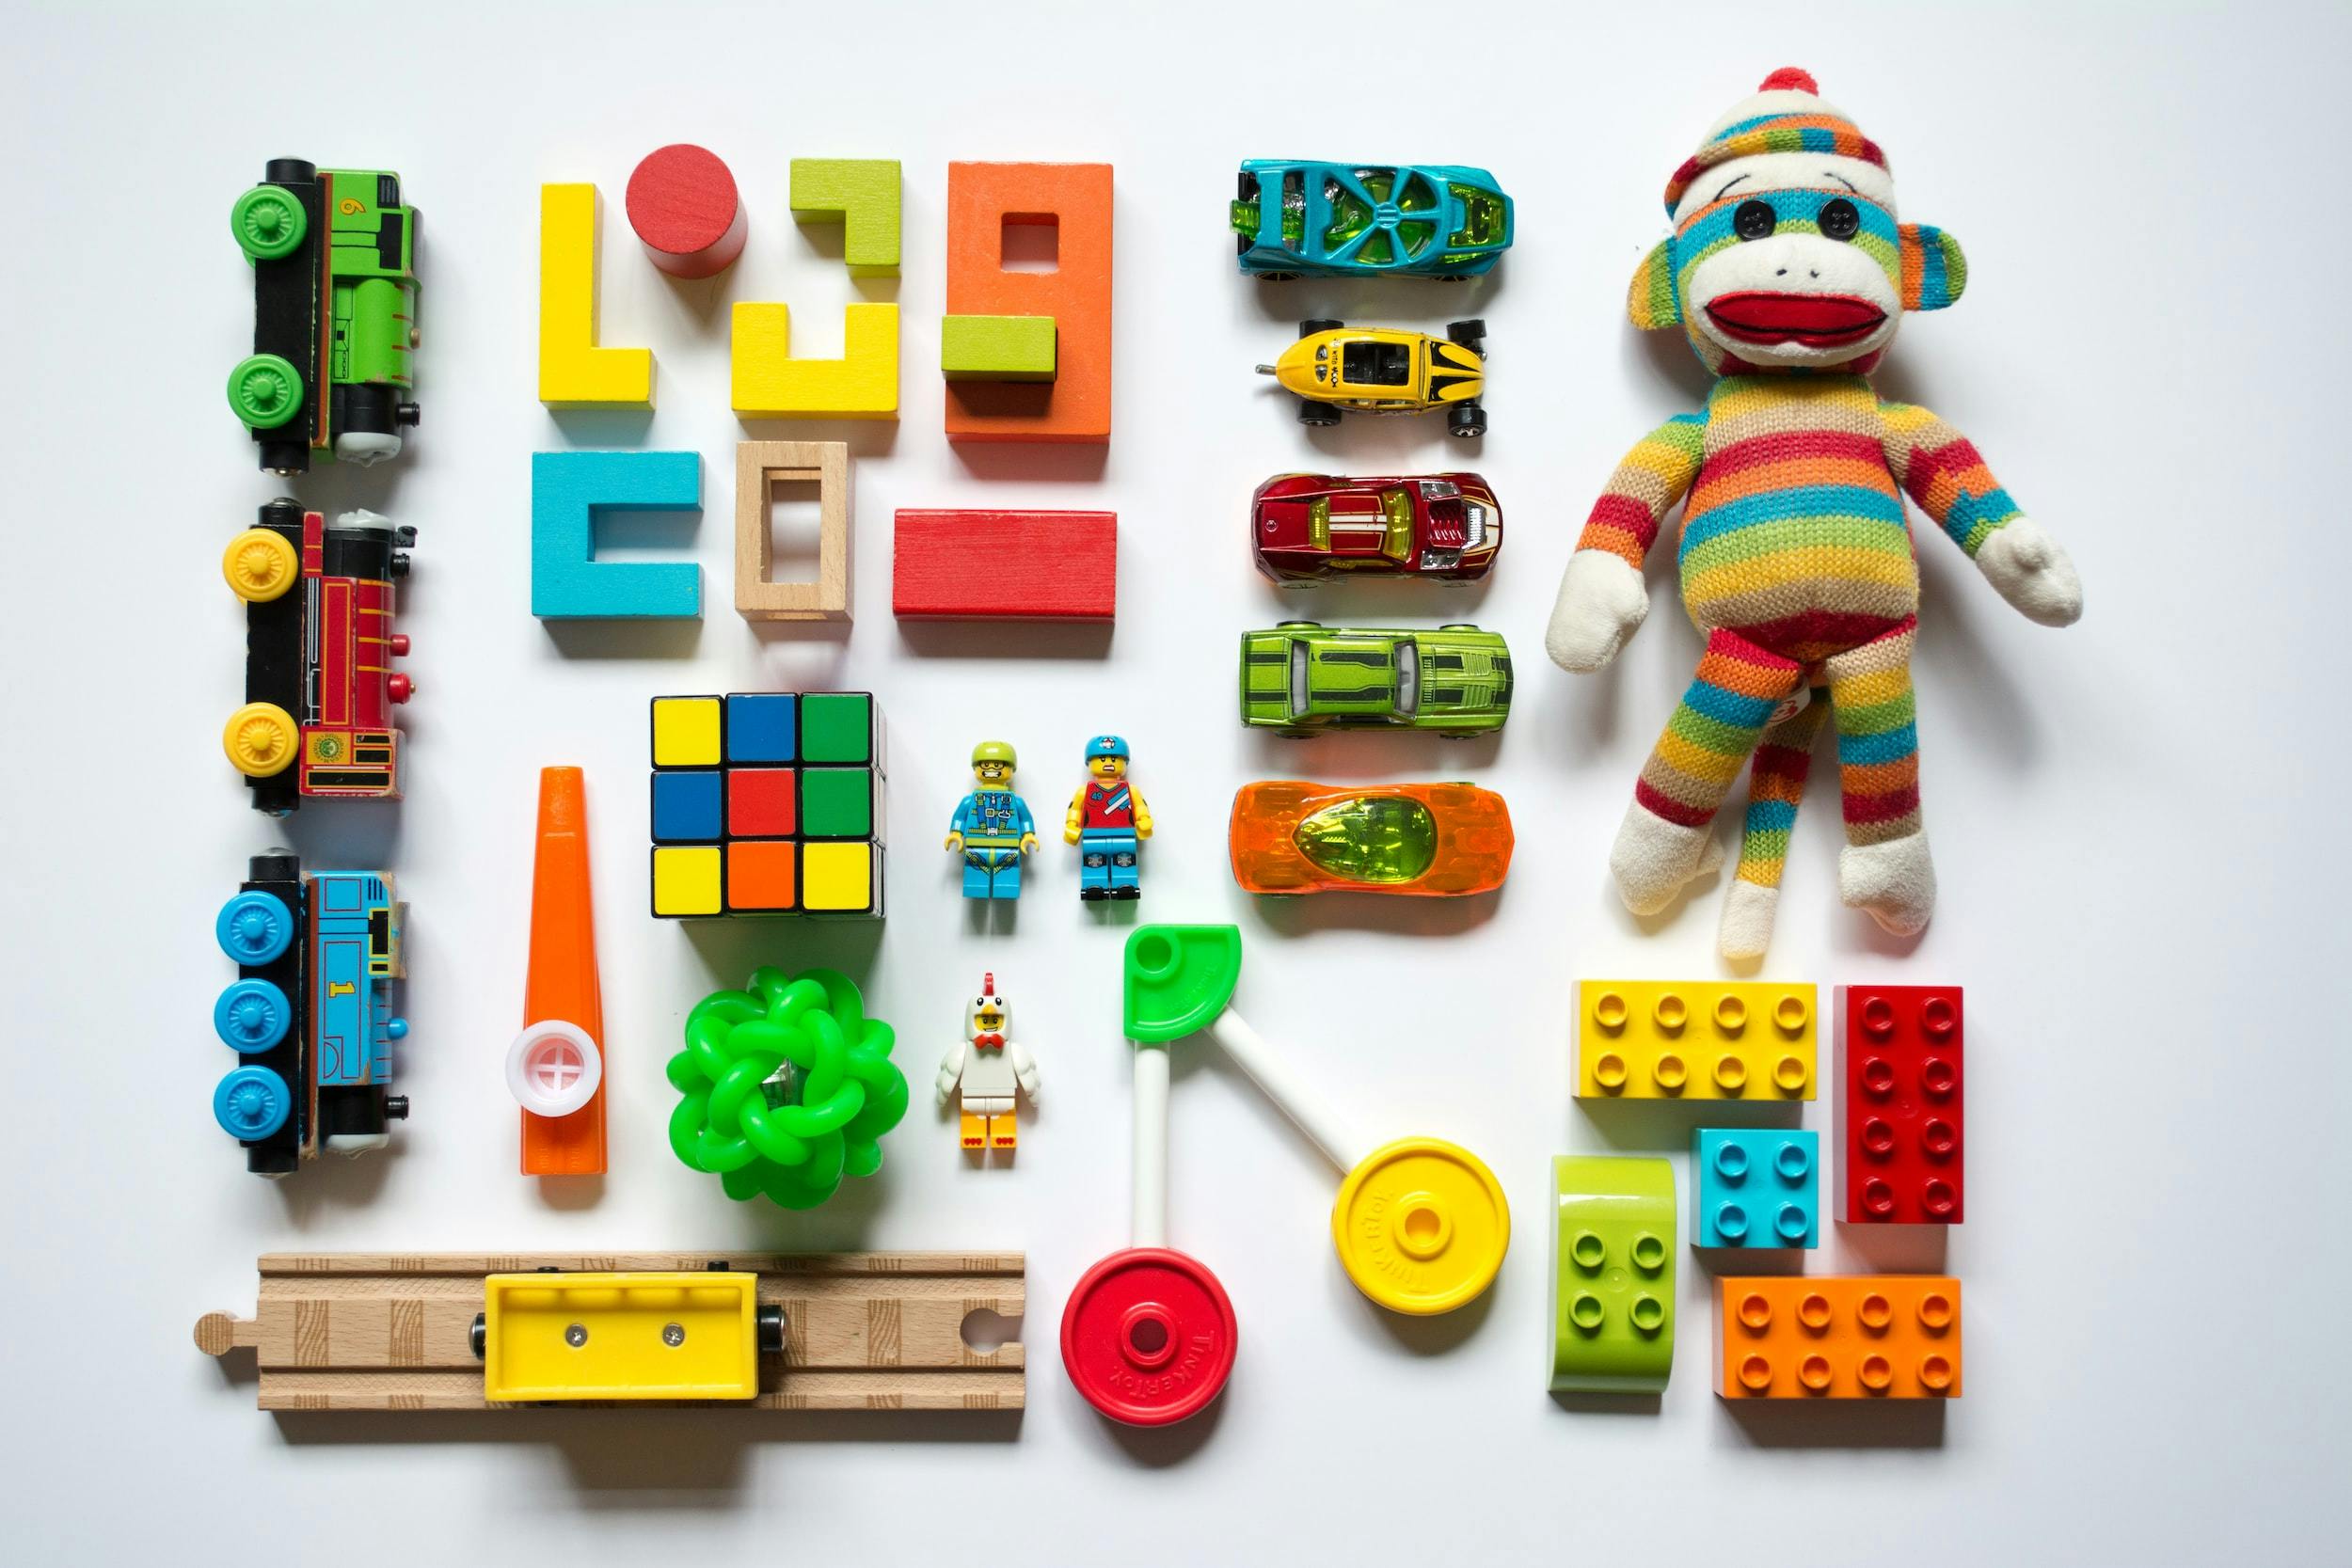 Serie di giocattoli colorati (trenini, rotaie, lego, macchinine, cubo di Rubik, scimmietta di pezza) disposti in griglia in perfetto ordine.